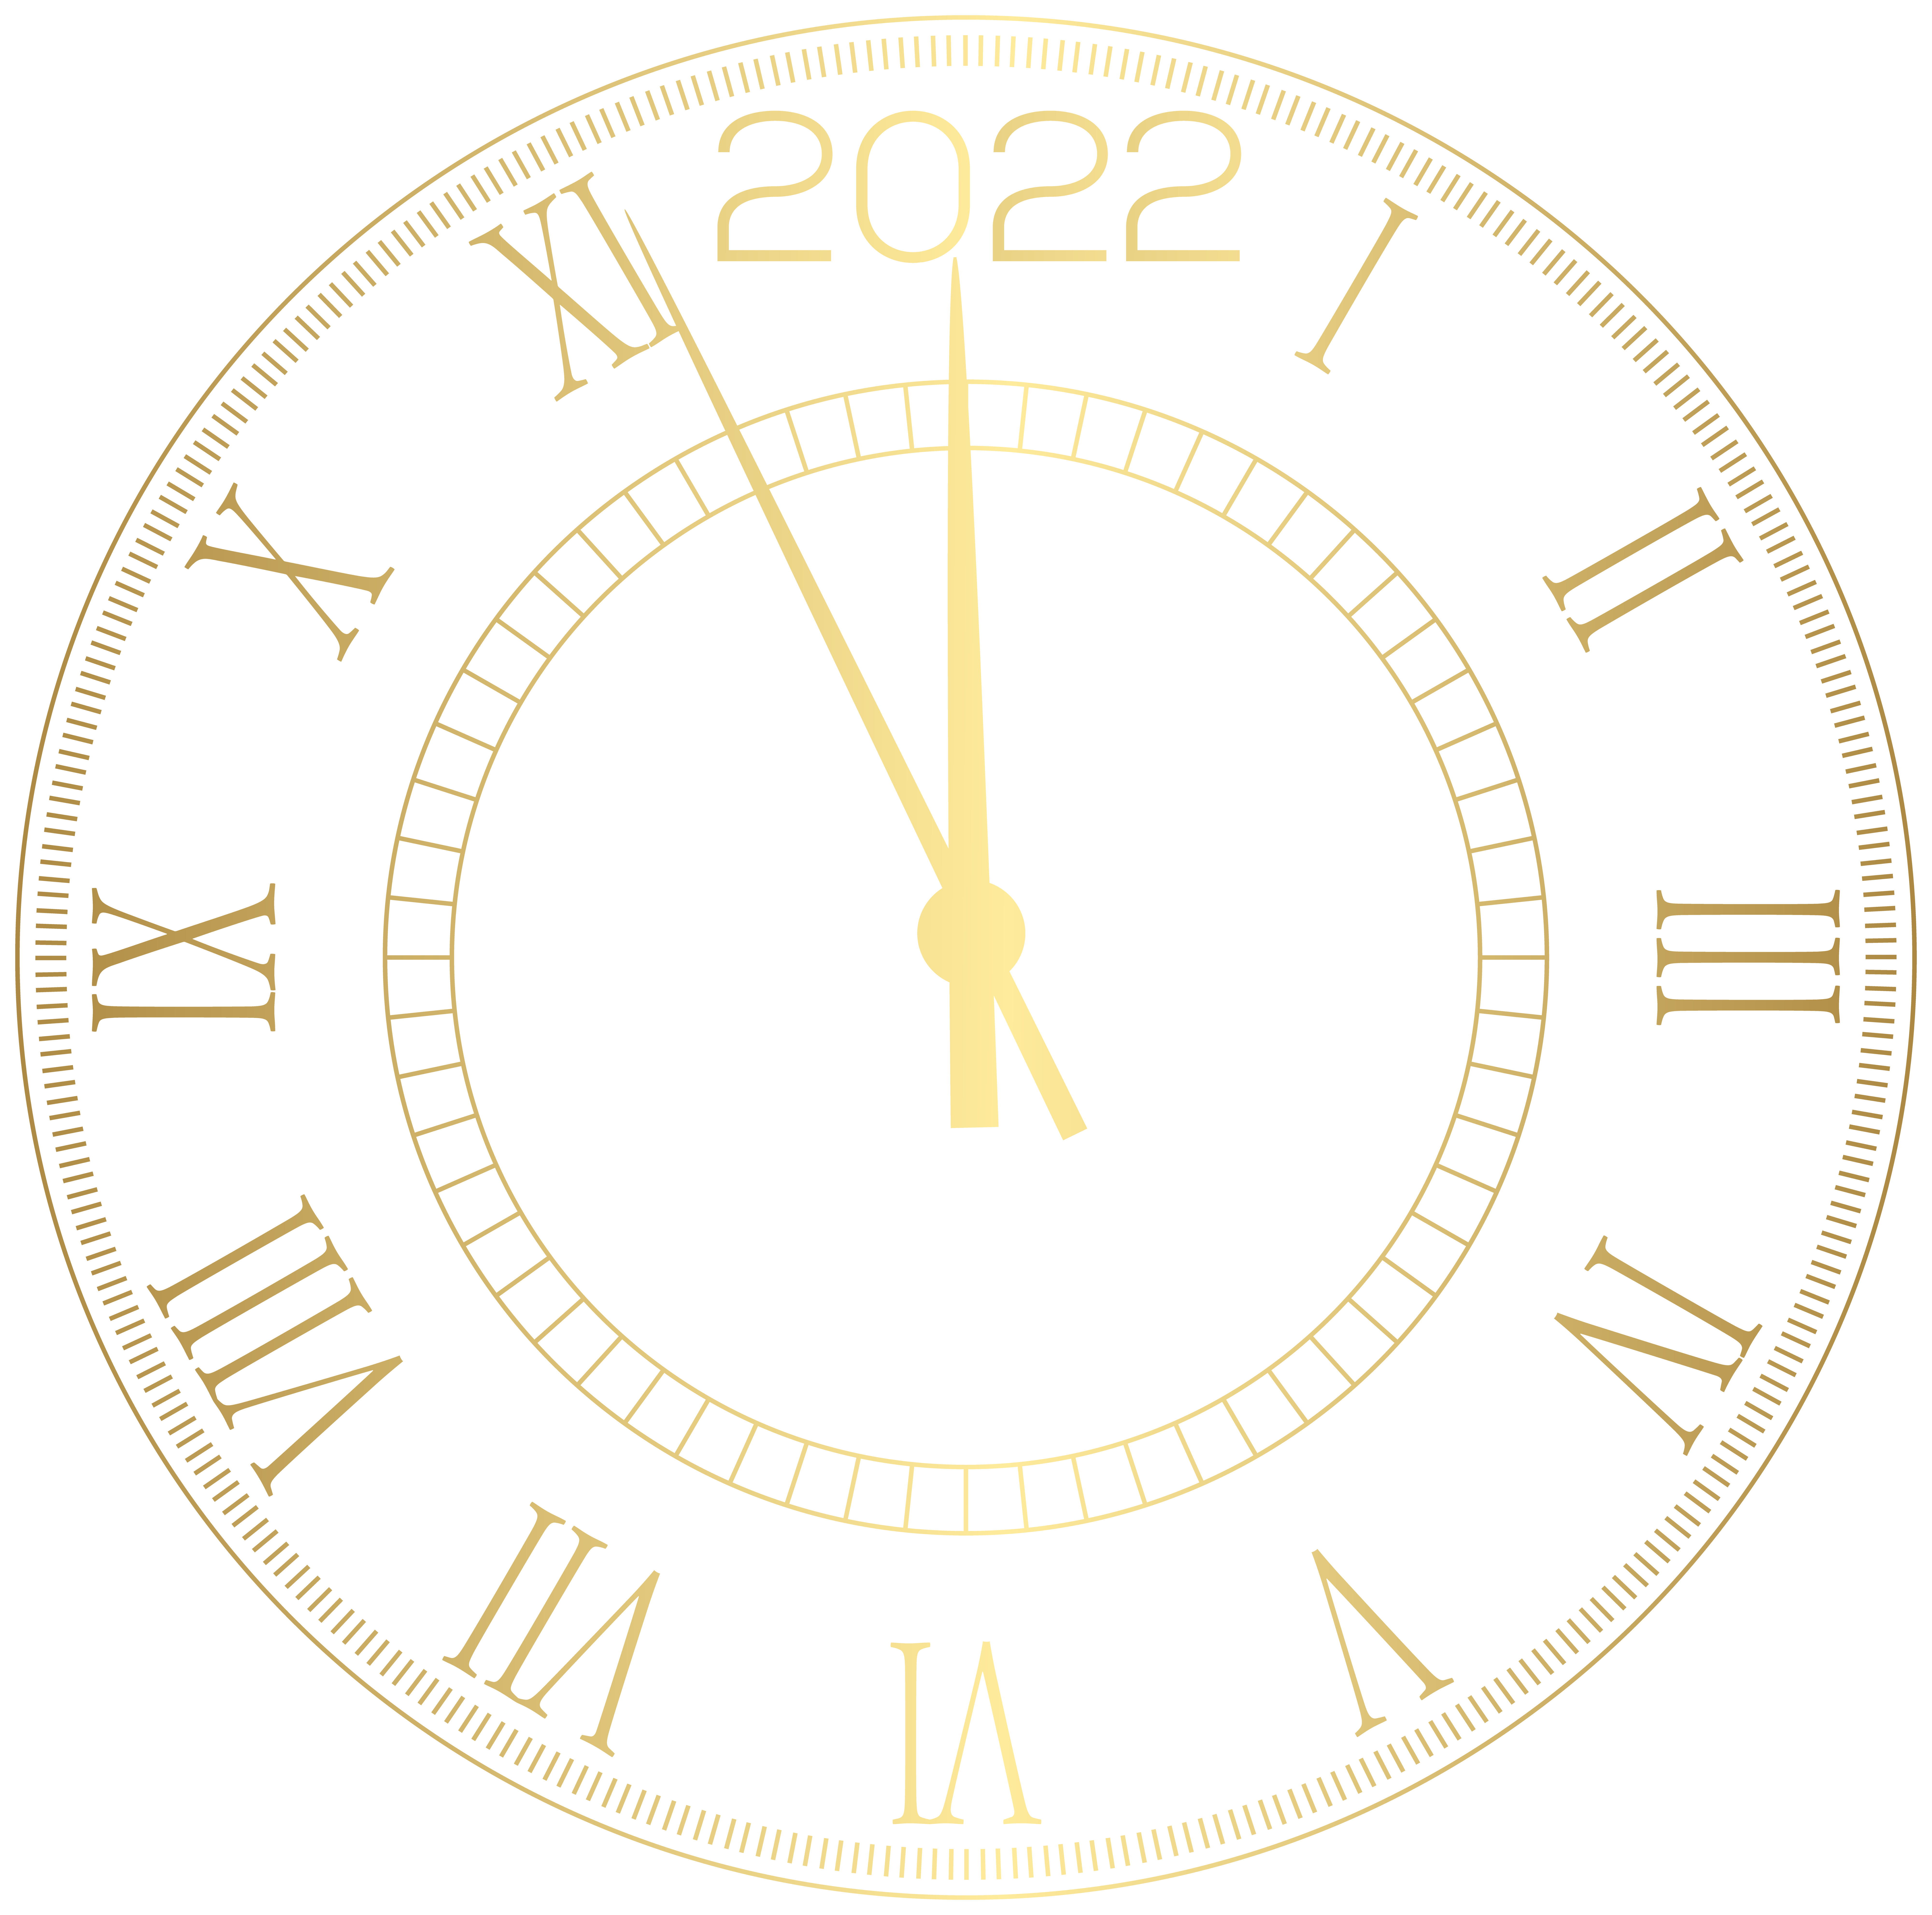 new years 2022 clock